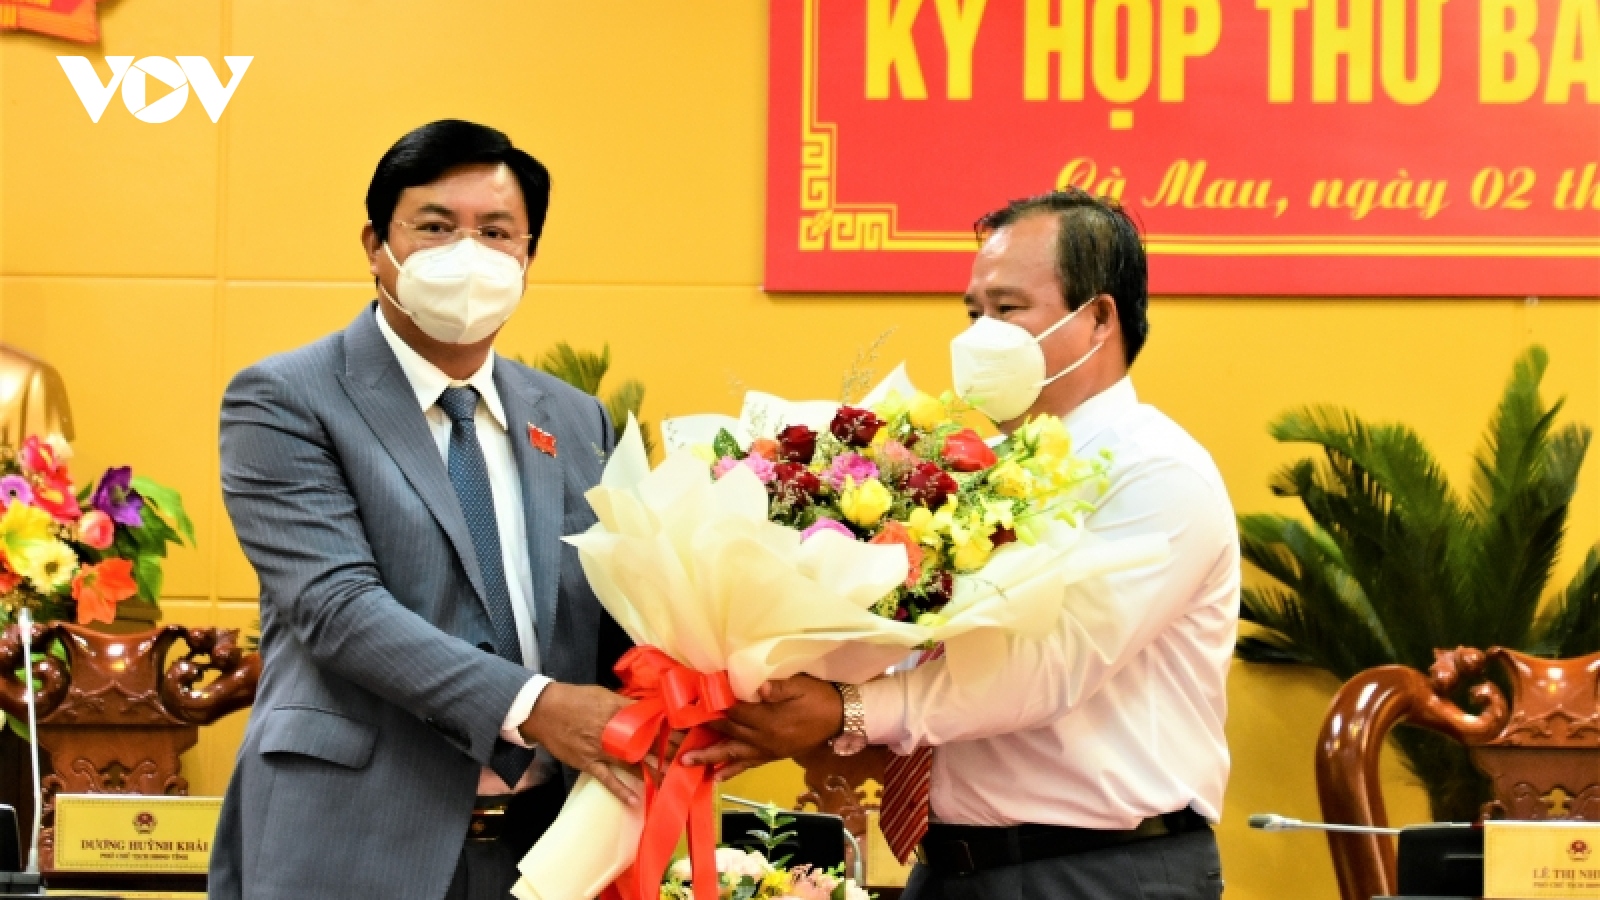 Ông Nguyễn Minh Luân được bầu làm Phó Chủ tịch UBND tỉnh Cà Mau